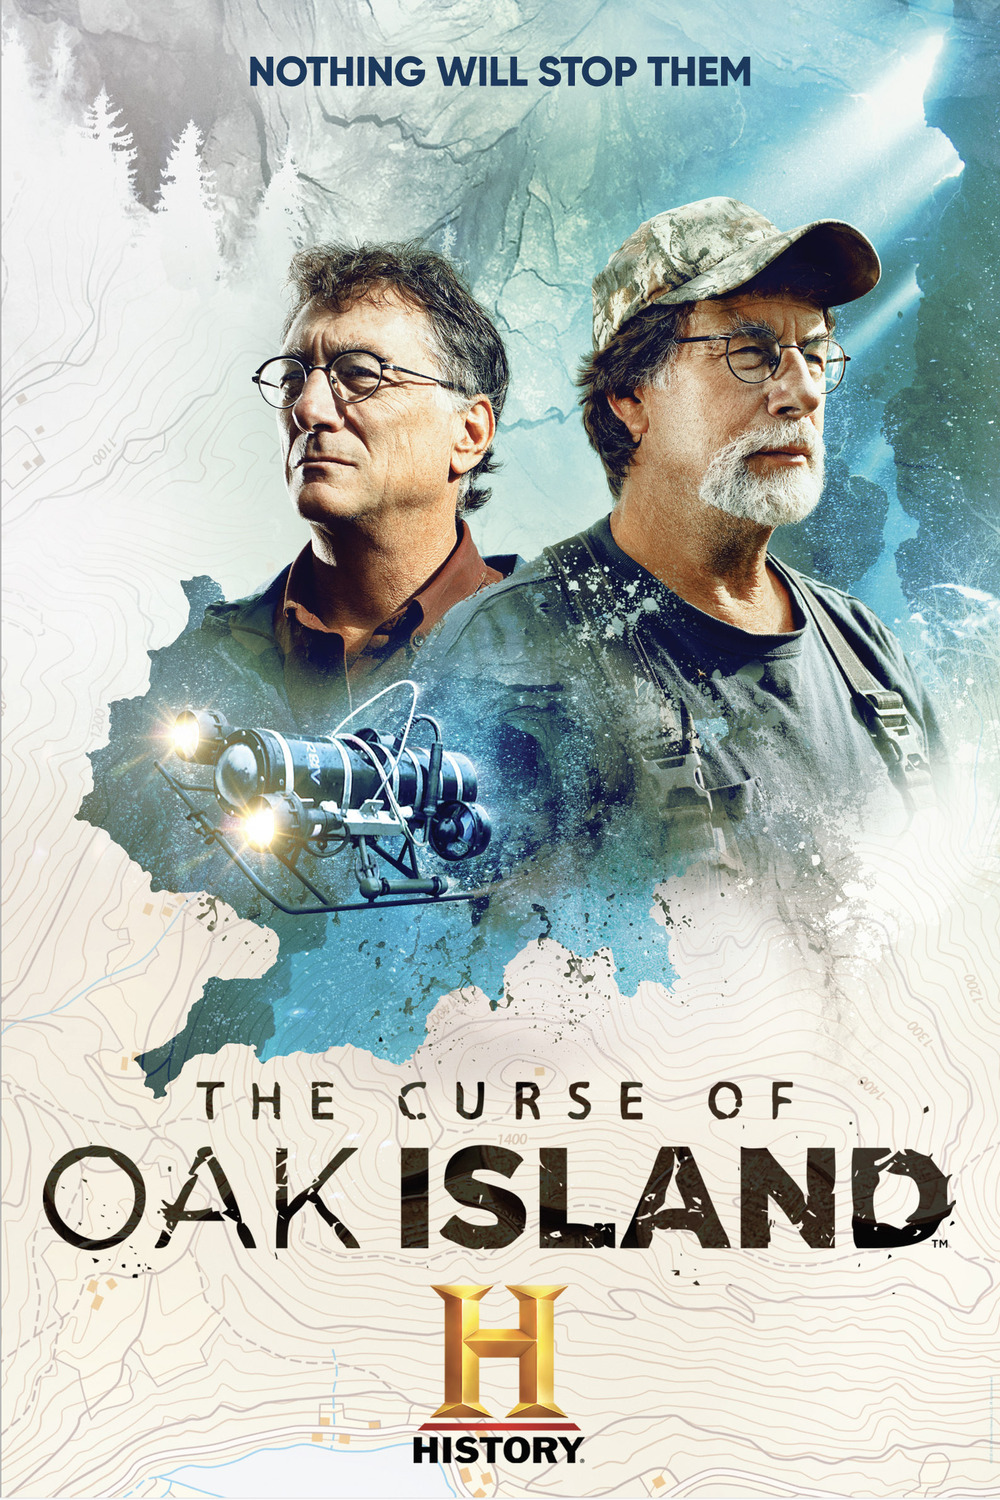 The Curse Of Oak Island S11E11 [1080p/720p] (x265) 7eaa671c90b9c6f41f60081bb3c94b64